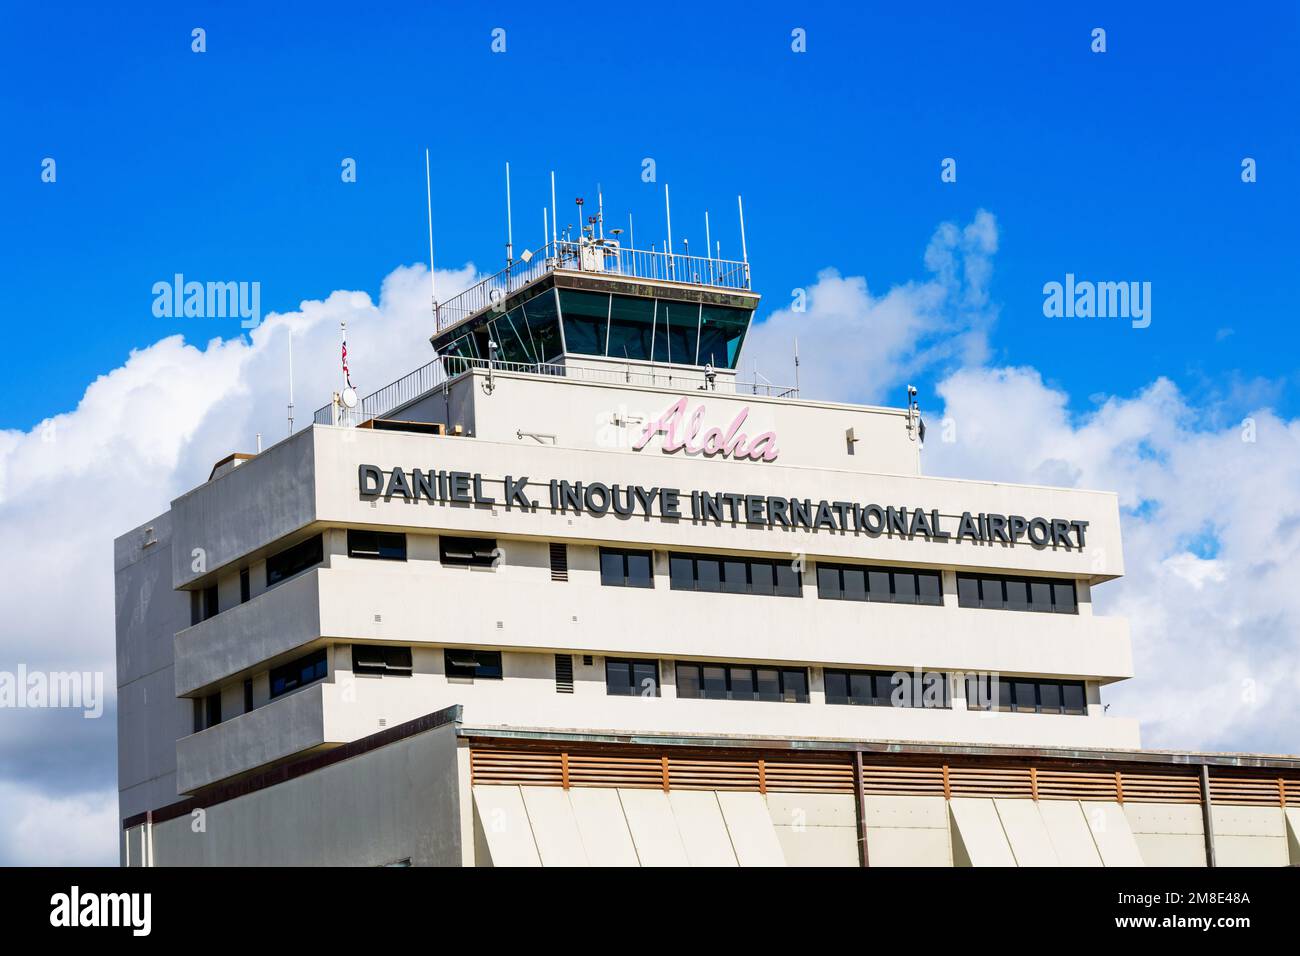 Panneau de l'aéroport international Daniel K. Inouye sur la façade de la tour de l'aéroport international HNL d'Honolulu. - Honolulu, Hawaii, Etats-Unis - 2022 Banque D'Images